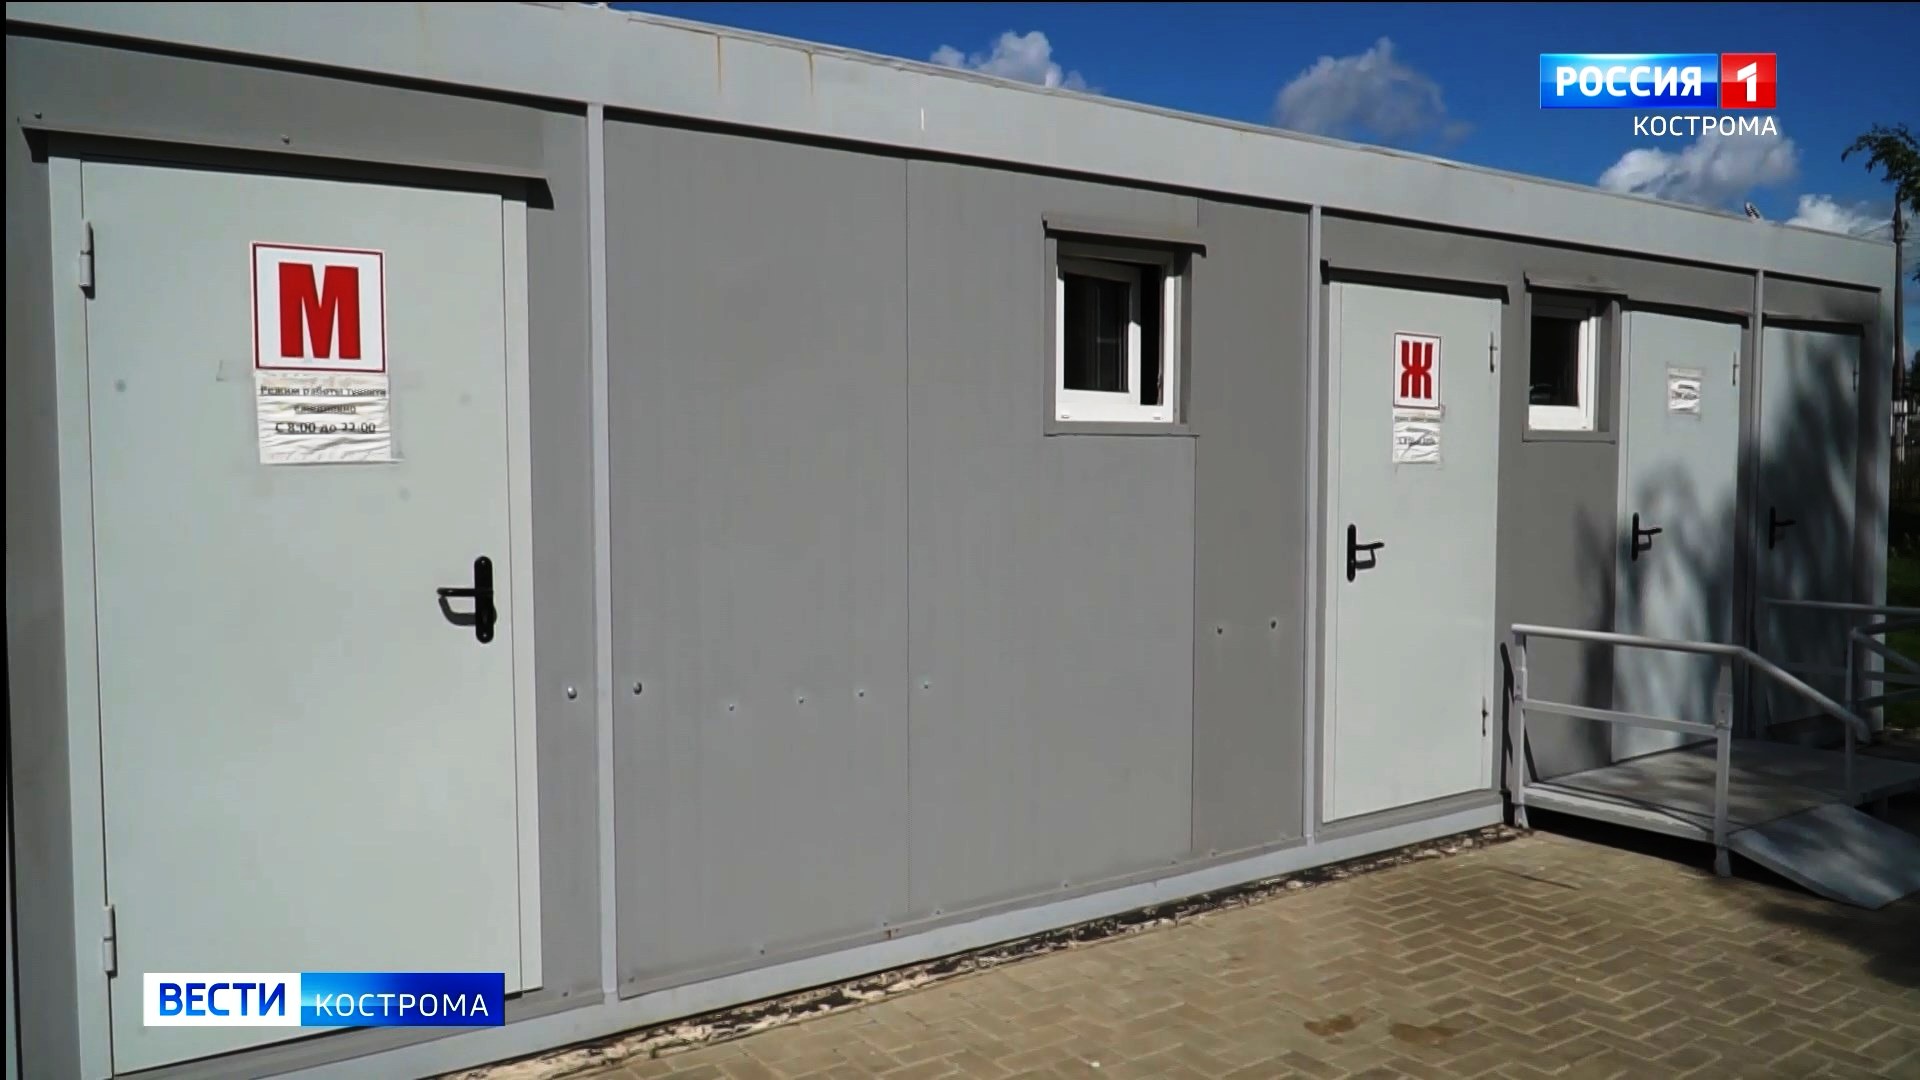 Туристы ждать не будут: общественники озаботились отсутствием туалетов в центре Костромы